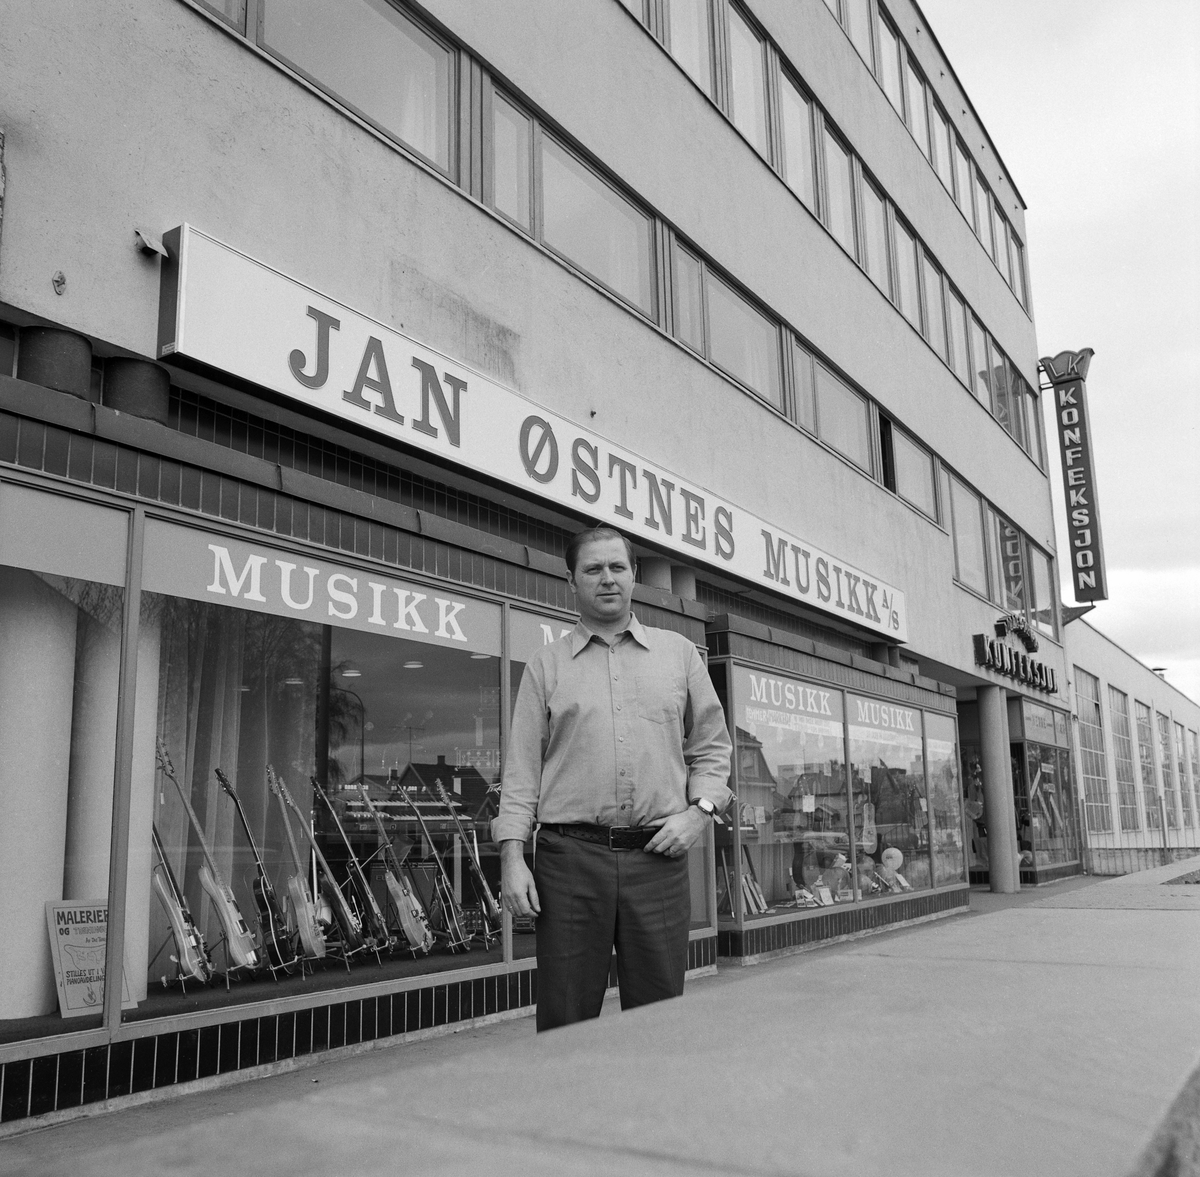 Jan Østnes Musikk i Lillestrøm